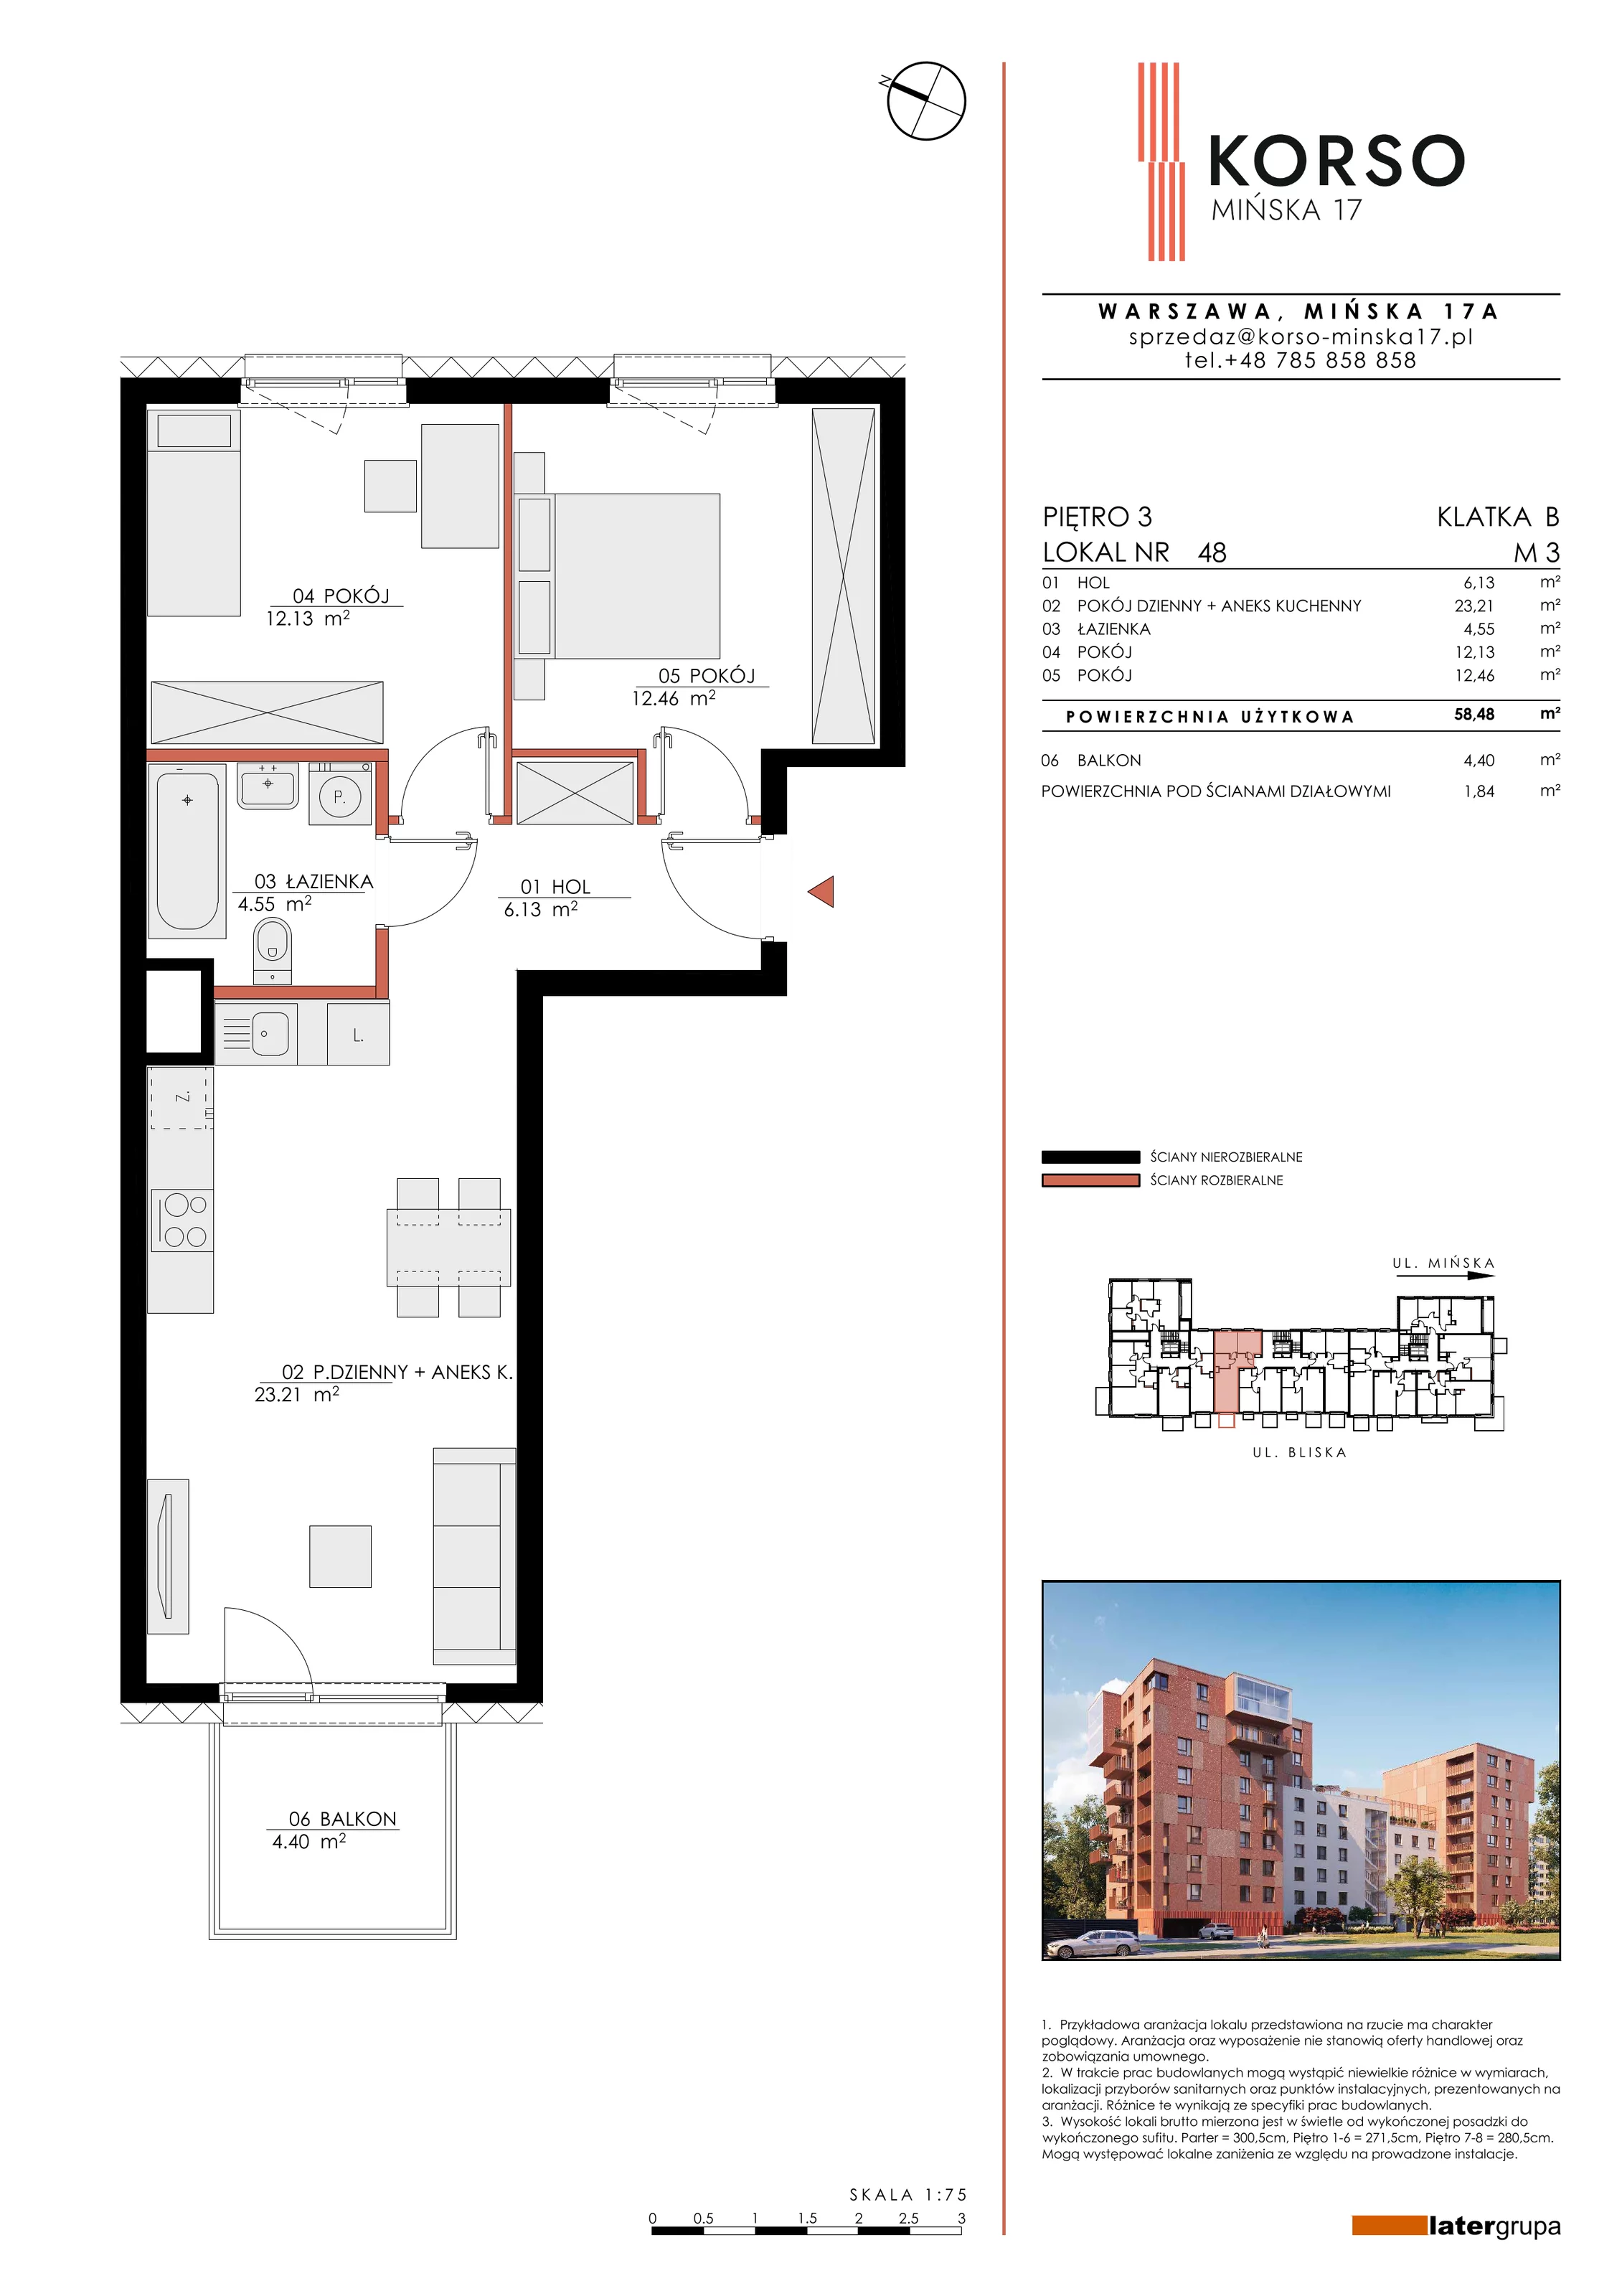 Mieszkanie 58,48 m², piętro 3, oferta nr 48, KORSO Mińska 17, Warszawa, Praga Południe, Kamionek, ul. Mińska 17